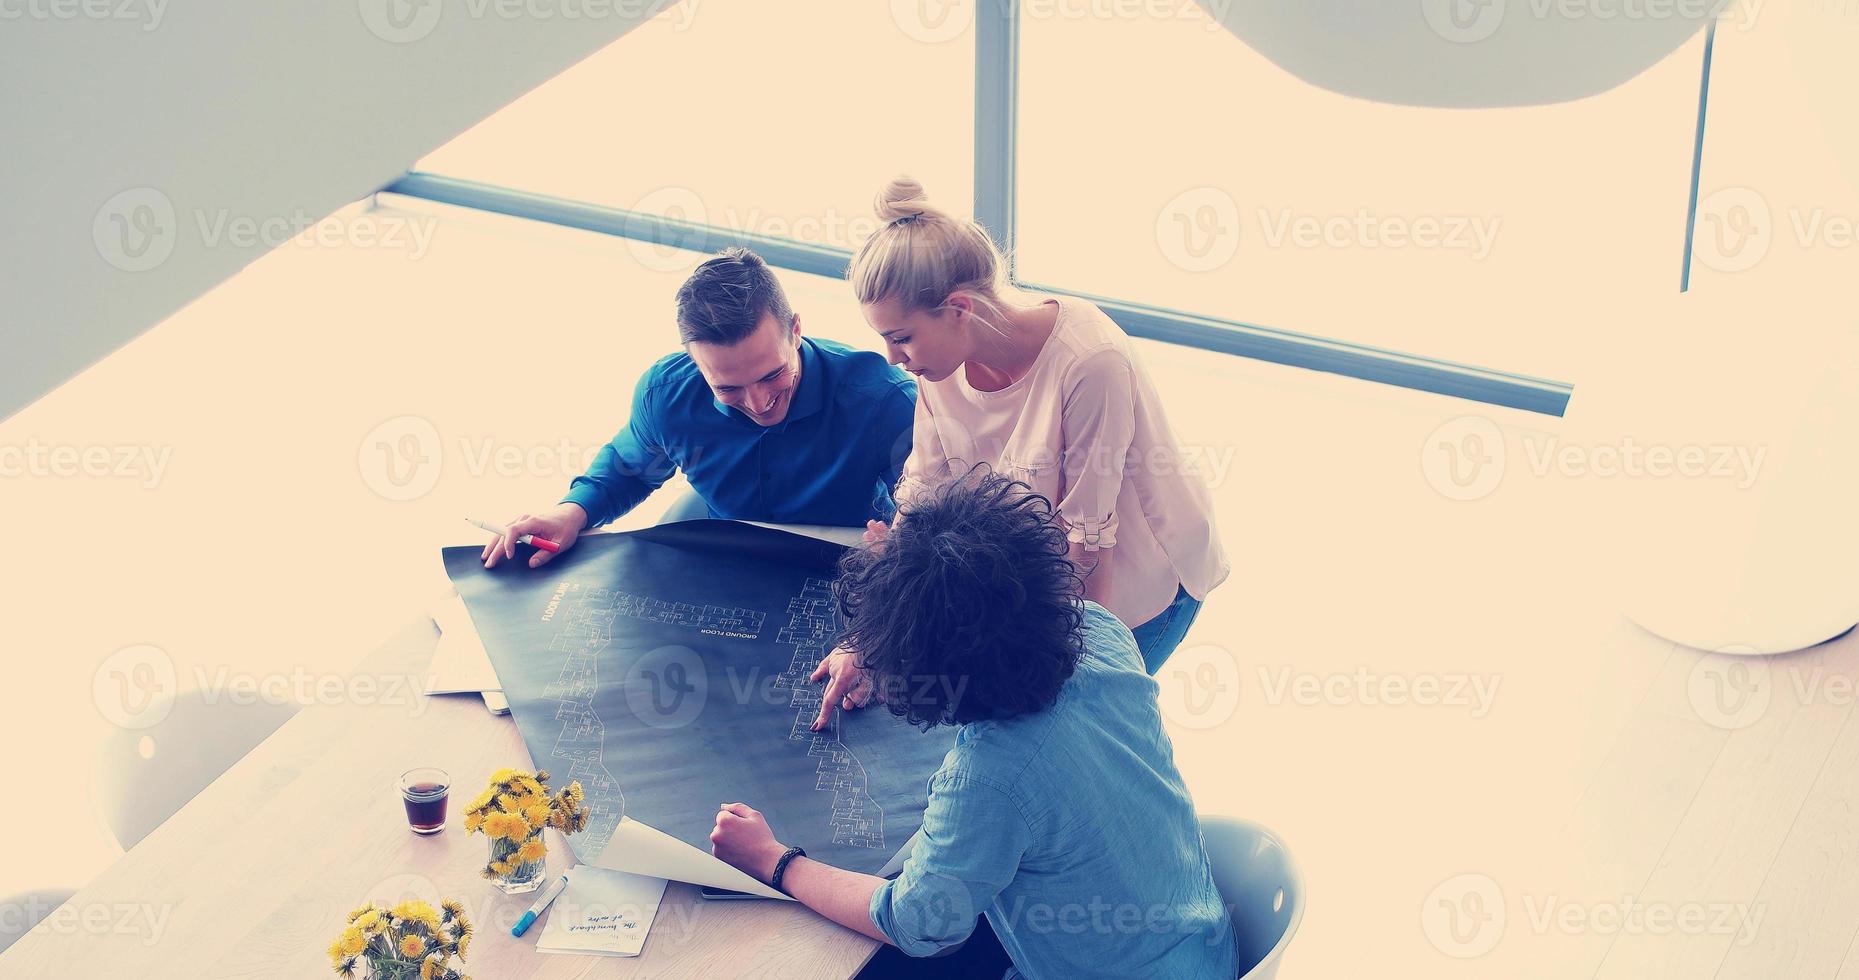 opstarten business team tijdens een bijeenkomst in modern kantoorgebouw foto